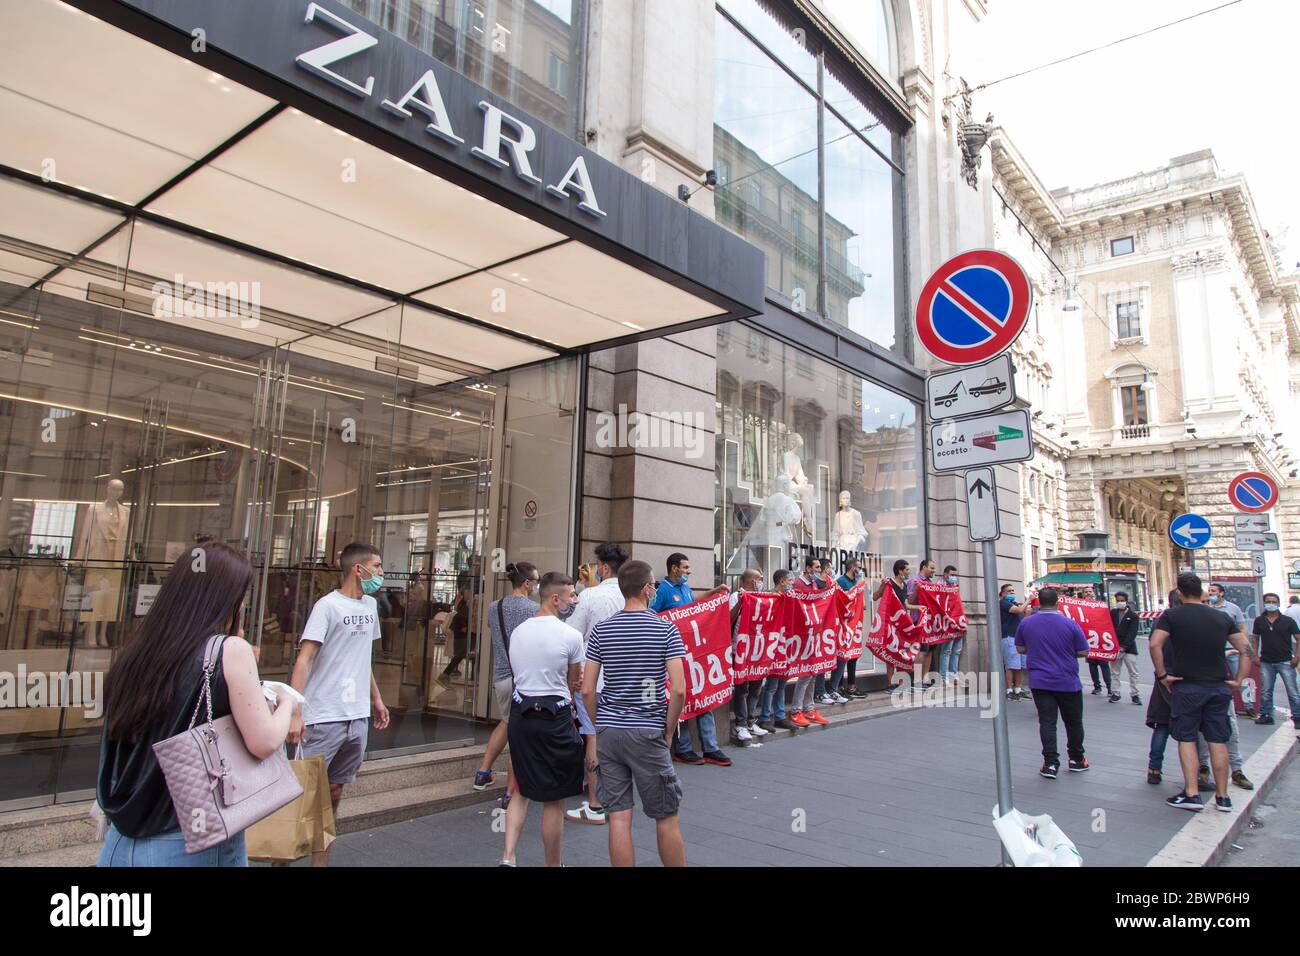 Roma, Italie. 02 juin 2020. Sit-in organisé par certains travailleurs de  Zara devant le magasin Zara de via del Corso à Rome pour protester contre  les licenciements décidés par le groupe Inditex